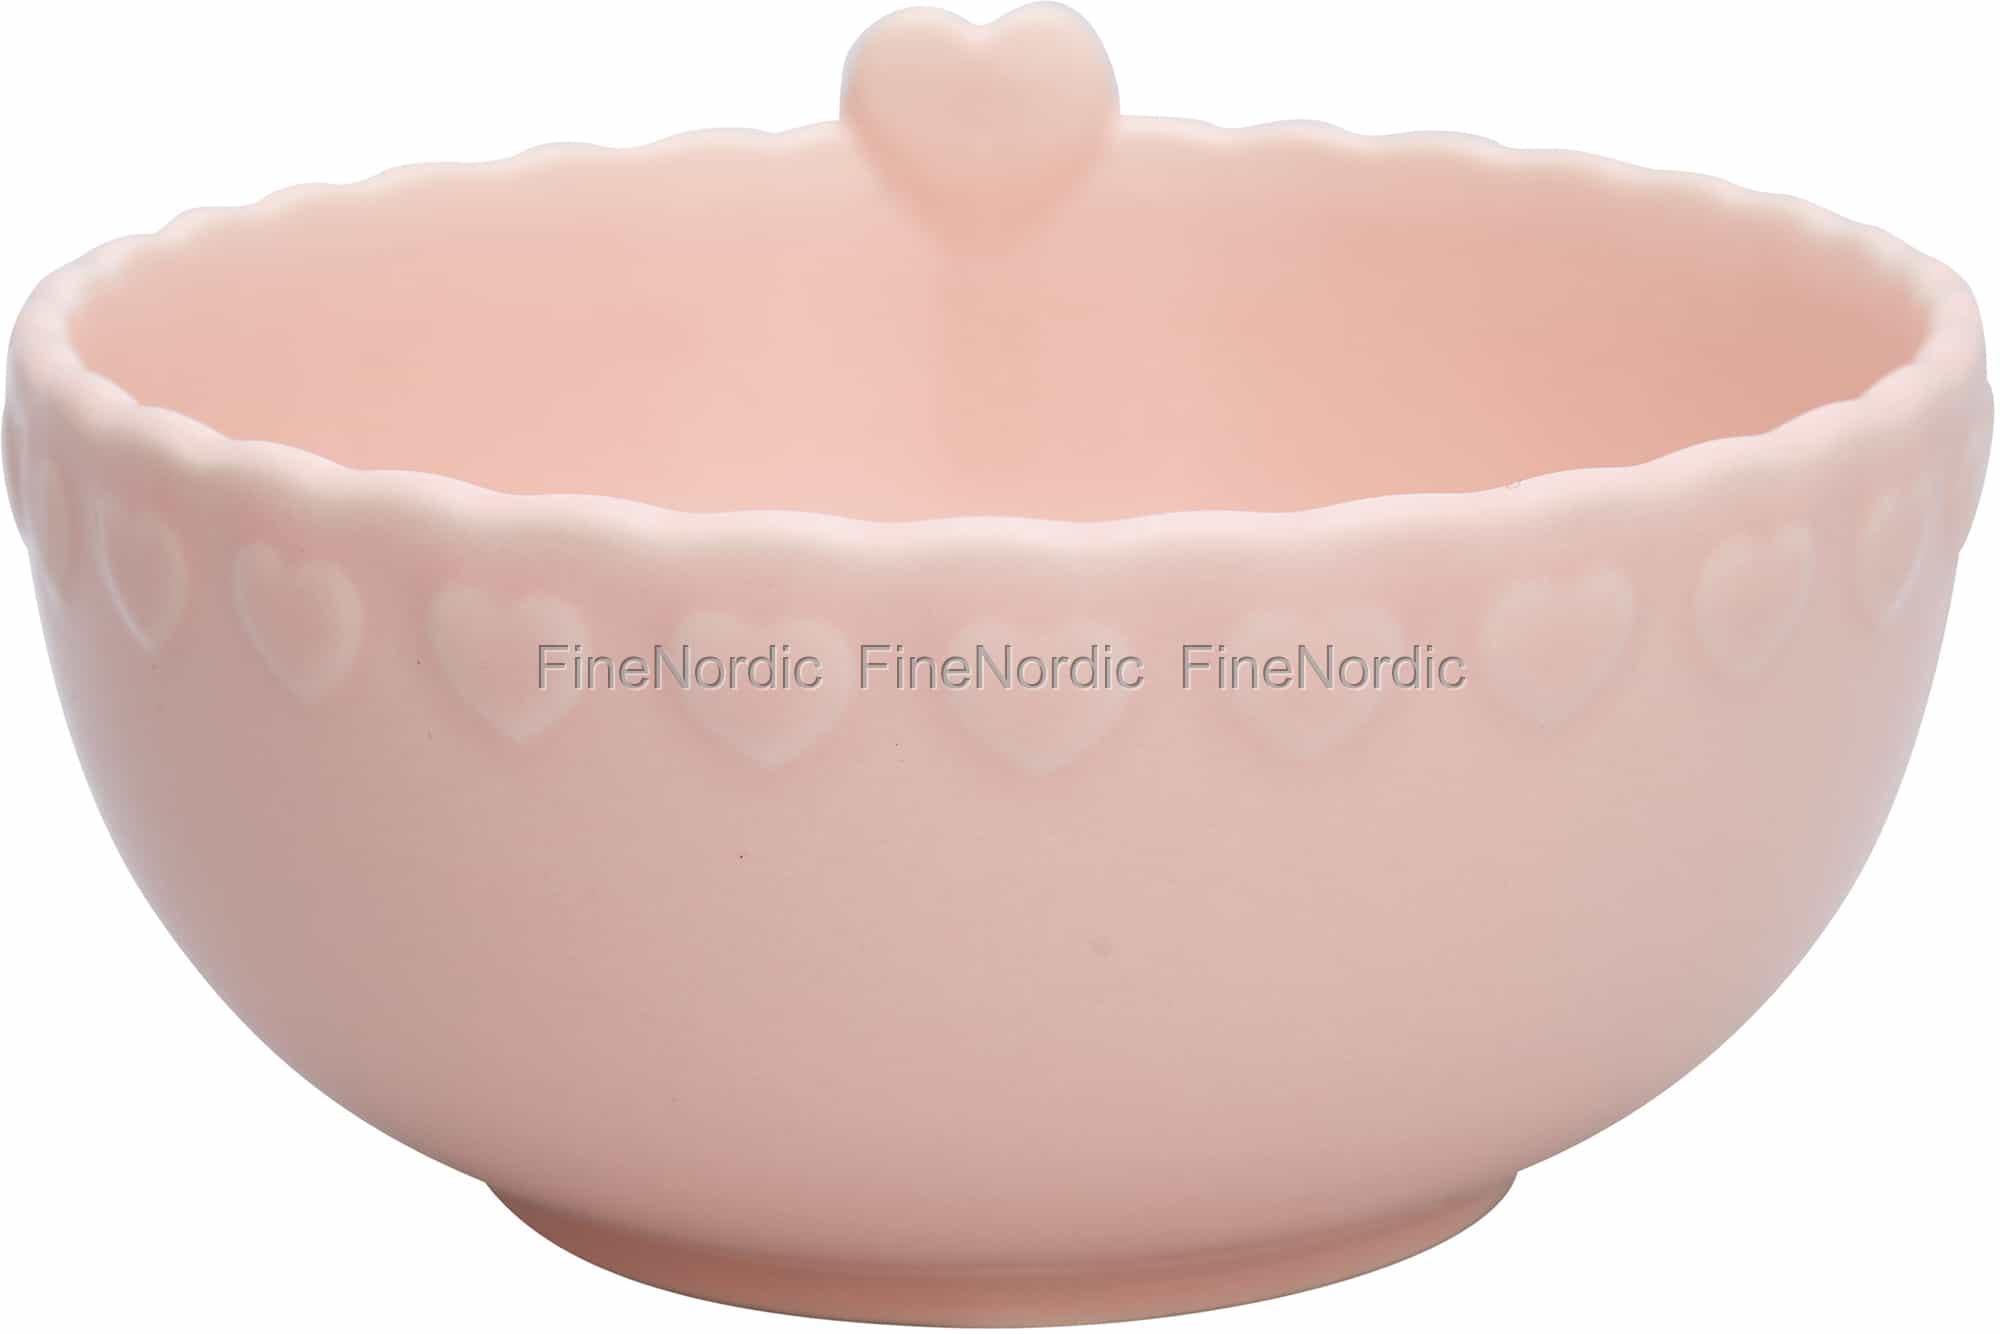 Large dusty rose ceramic bowl